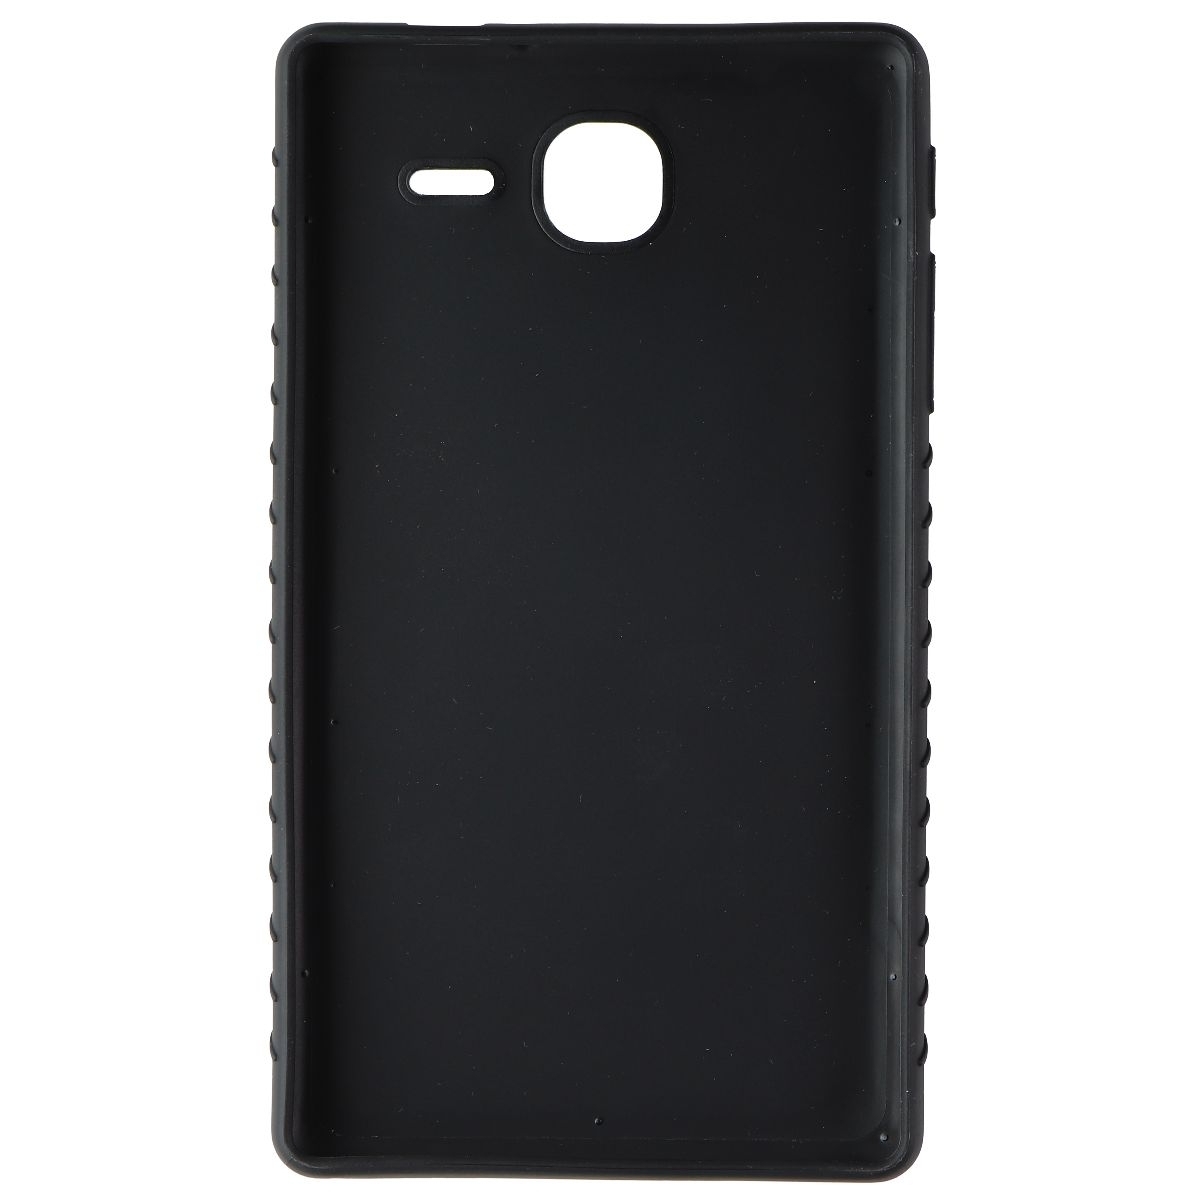 Alcatel Rugged Hardshell Case For Pop 7 LTE (2016 Model) Tablet - Black (Refurbished)